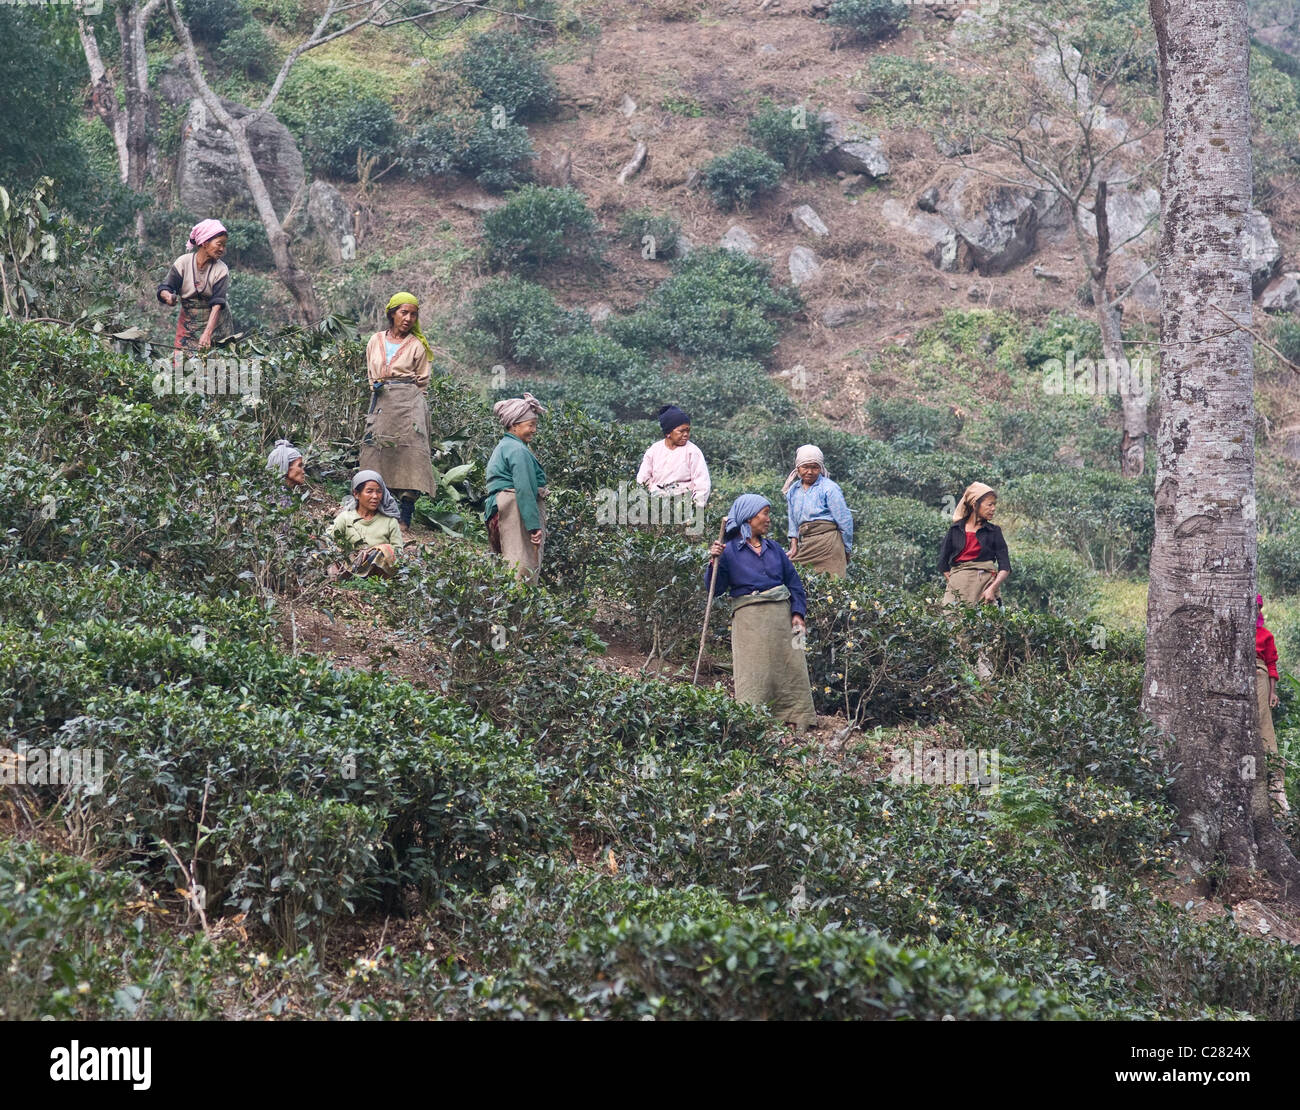 Tea picker sikkimese women team on a tea plantation near Darjeeling Stock Photo